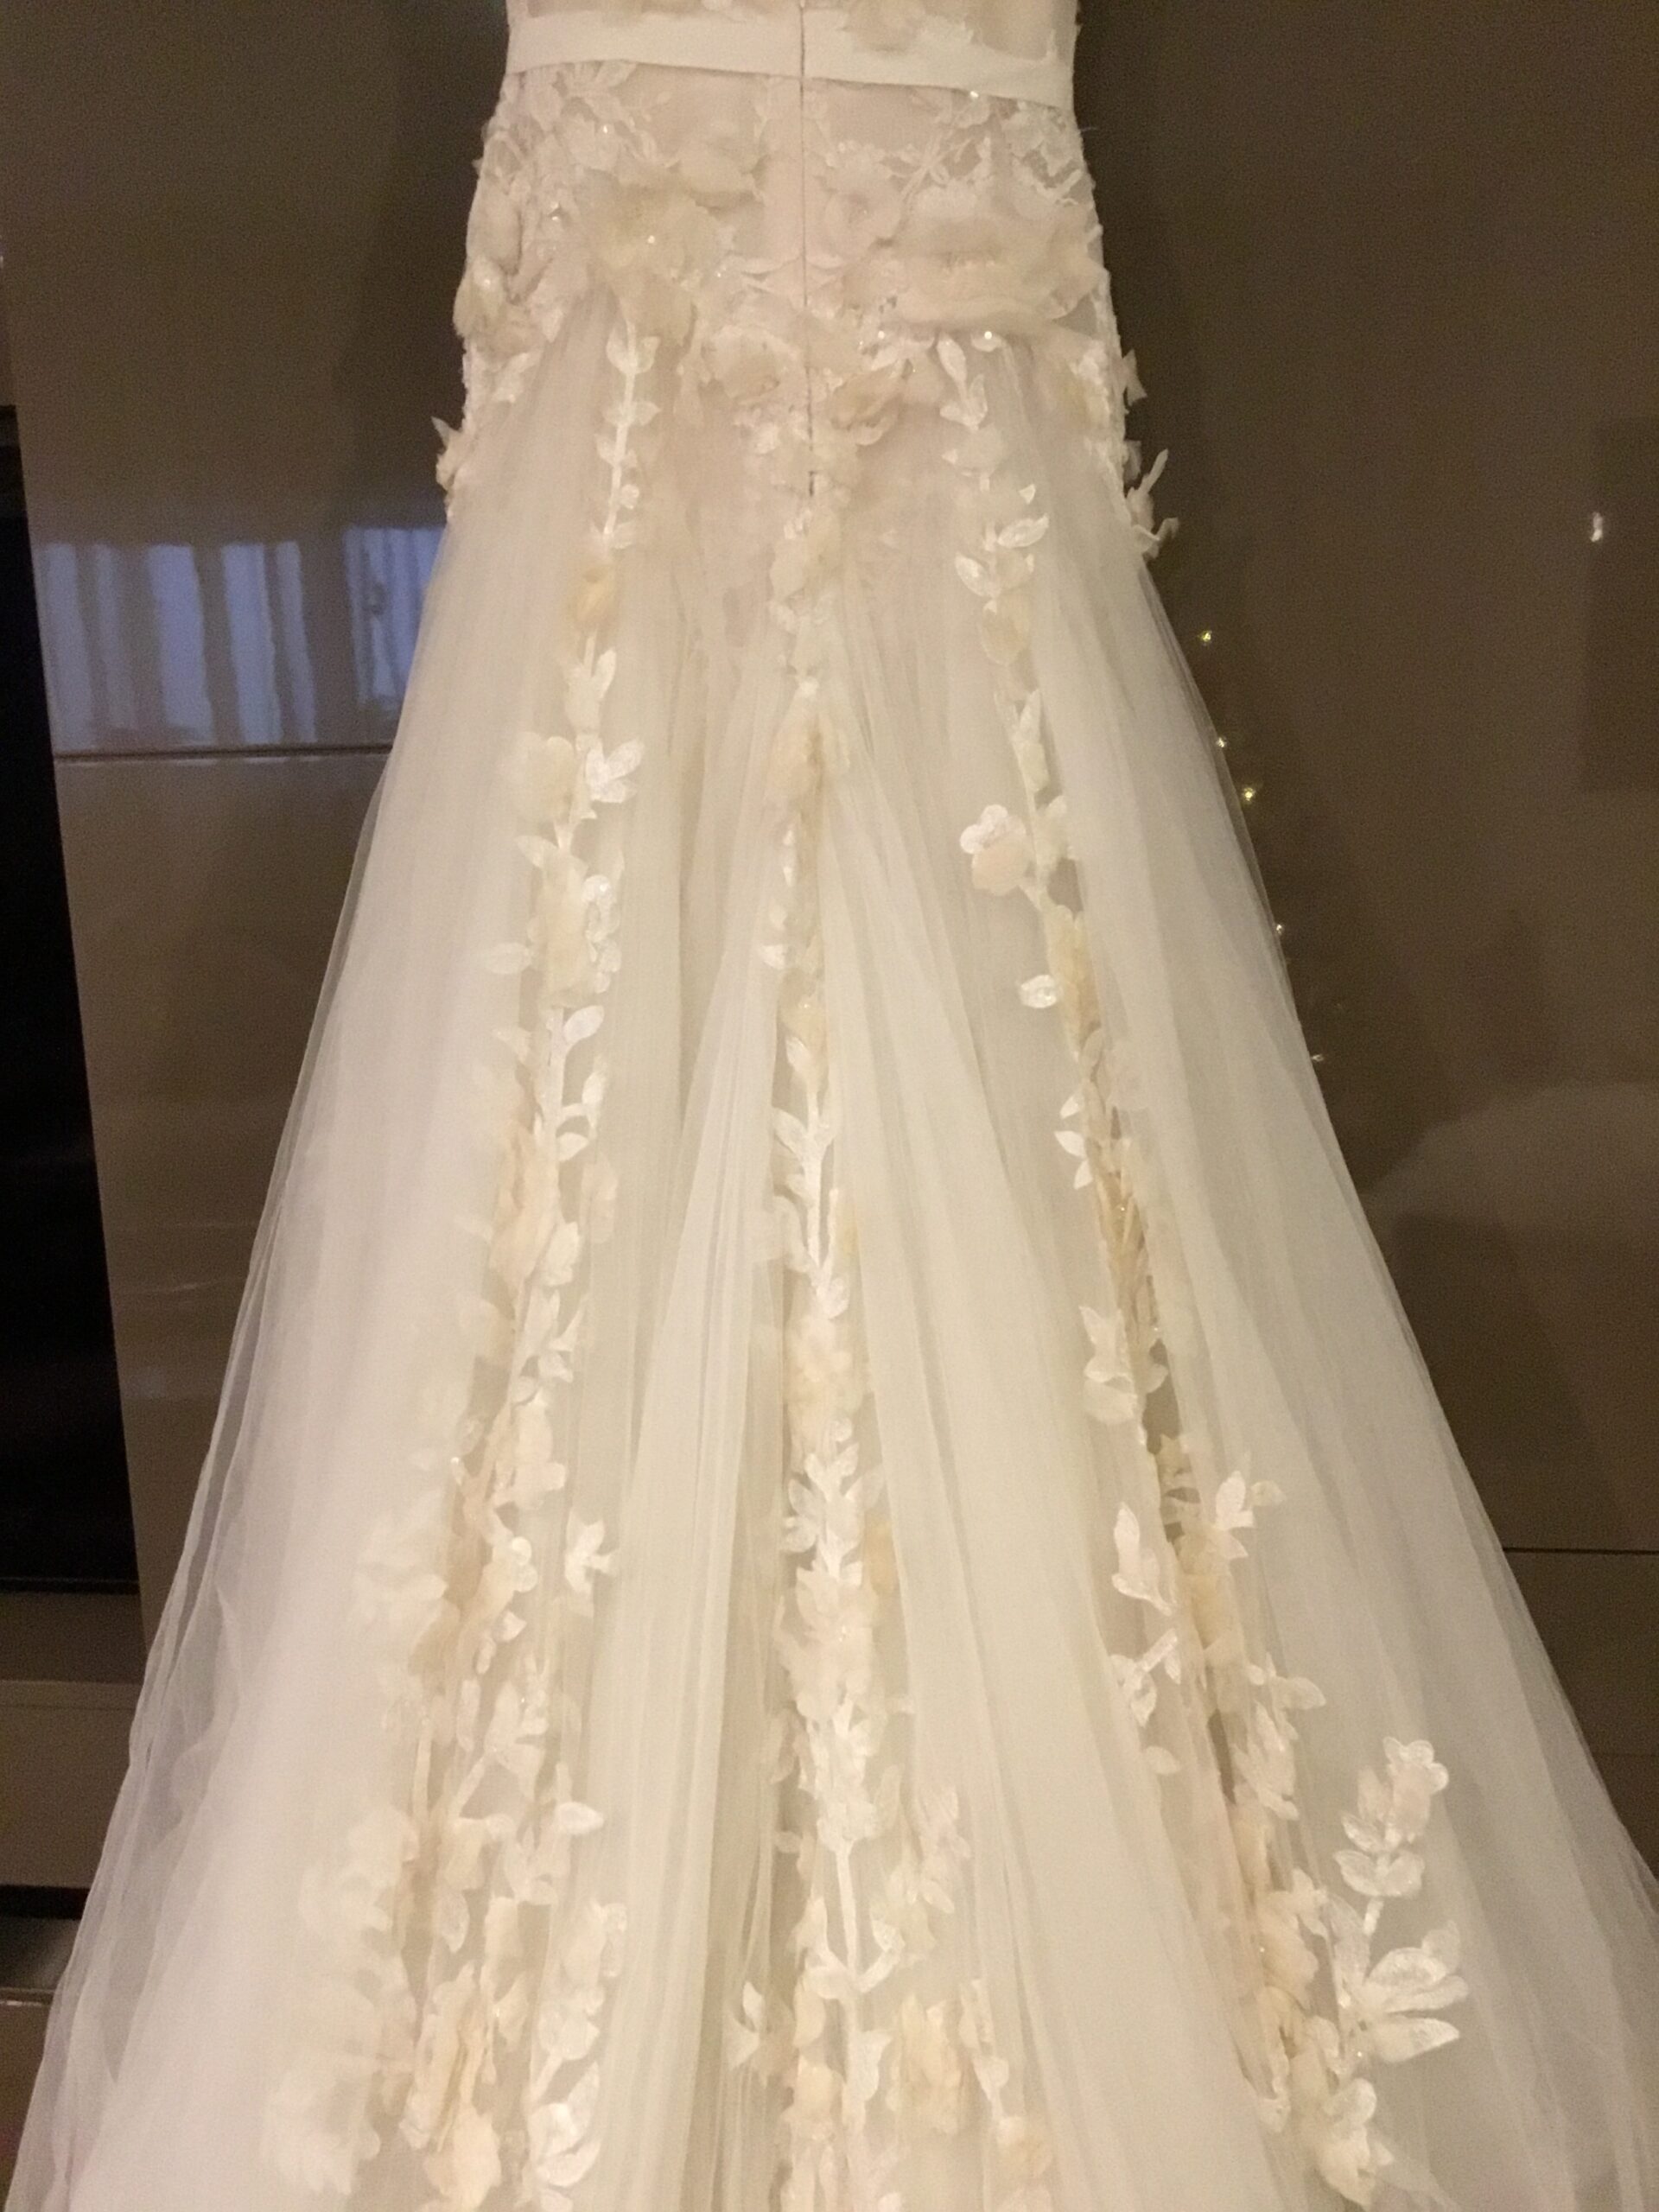 Vestido de noiva Elie Saab Aglaya Wedding Dress. Vestido de Noiva coleção Pronovias- modelo Aglaya Elie Saab 2011 1